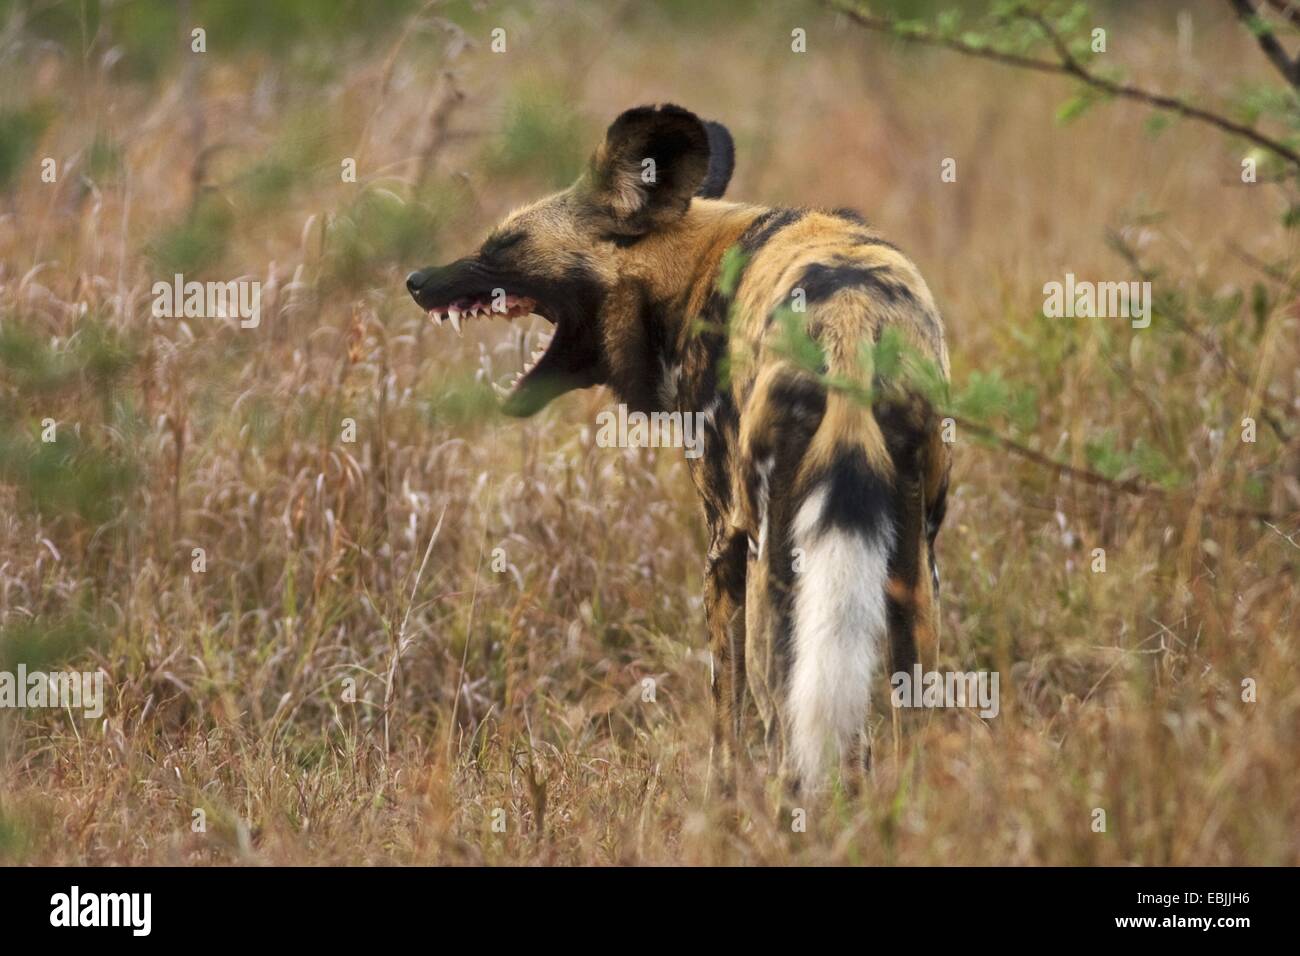 African wild dog (Lycaon pictus), yawning, South Africa, Kwazulu-Natal, Hluhluwe-Umfolozi National Park Stock Photo